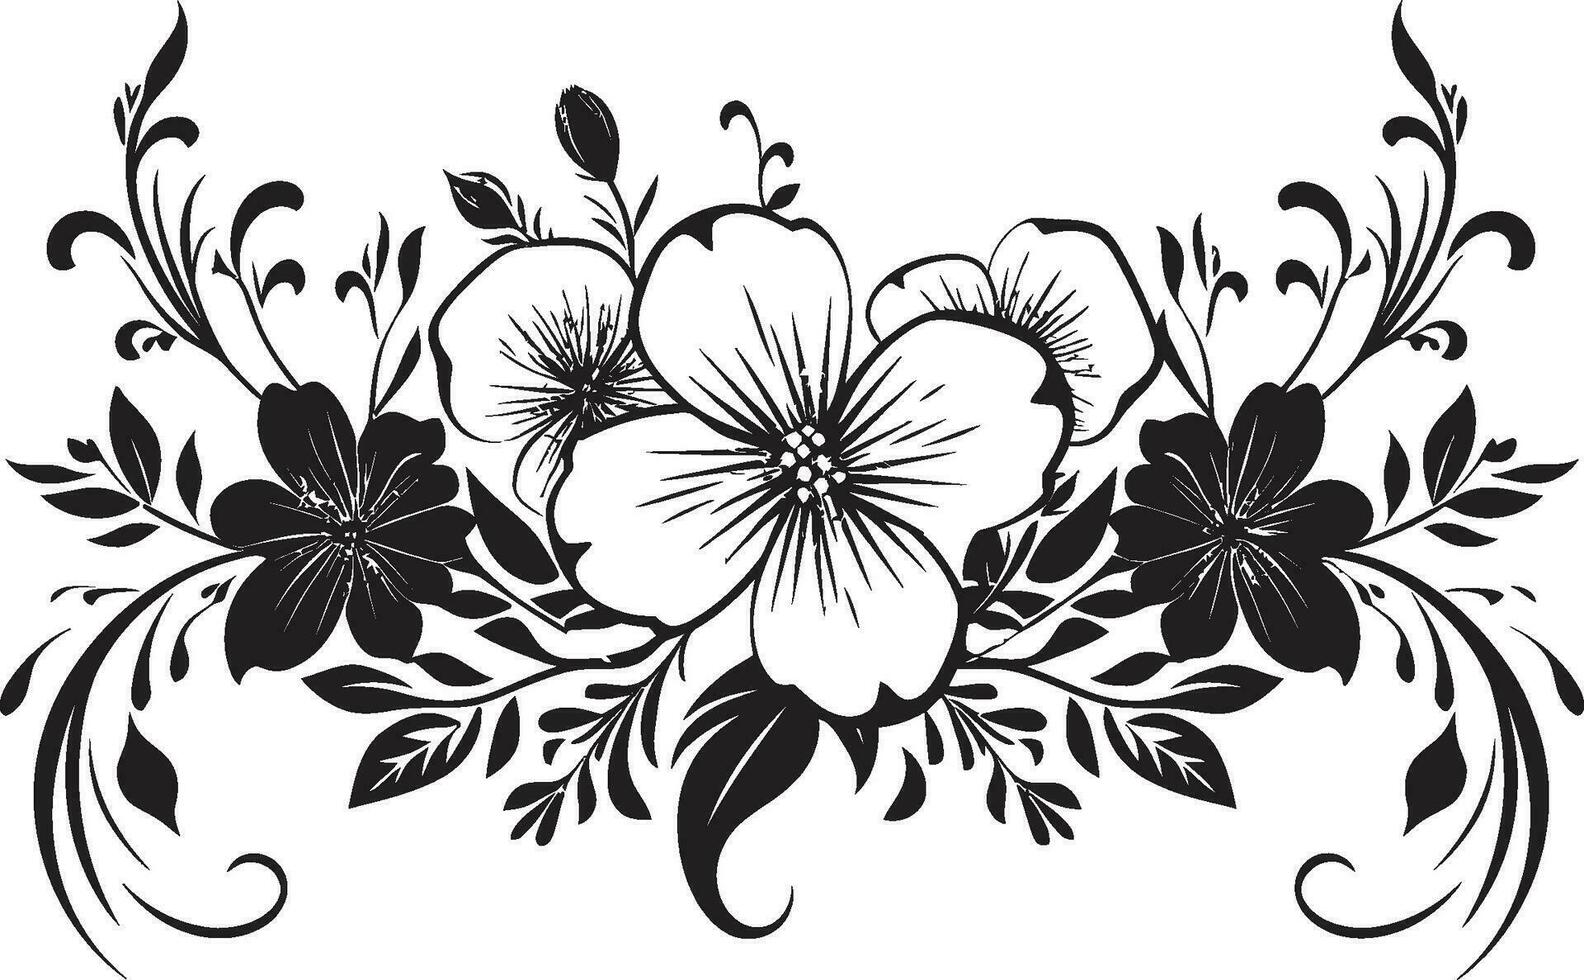 zart handgemacht Laub ikonisch Logo Detail retro Blumen- scrollen Hand gezeichnet Vektor Emblem